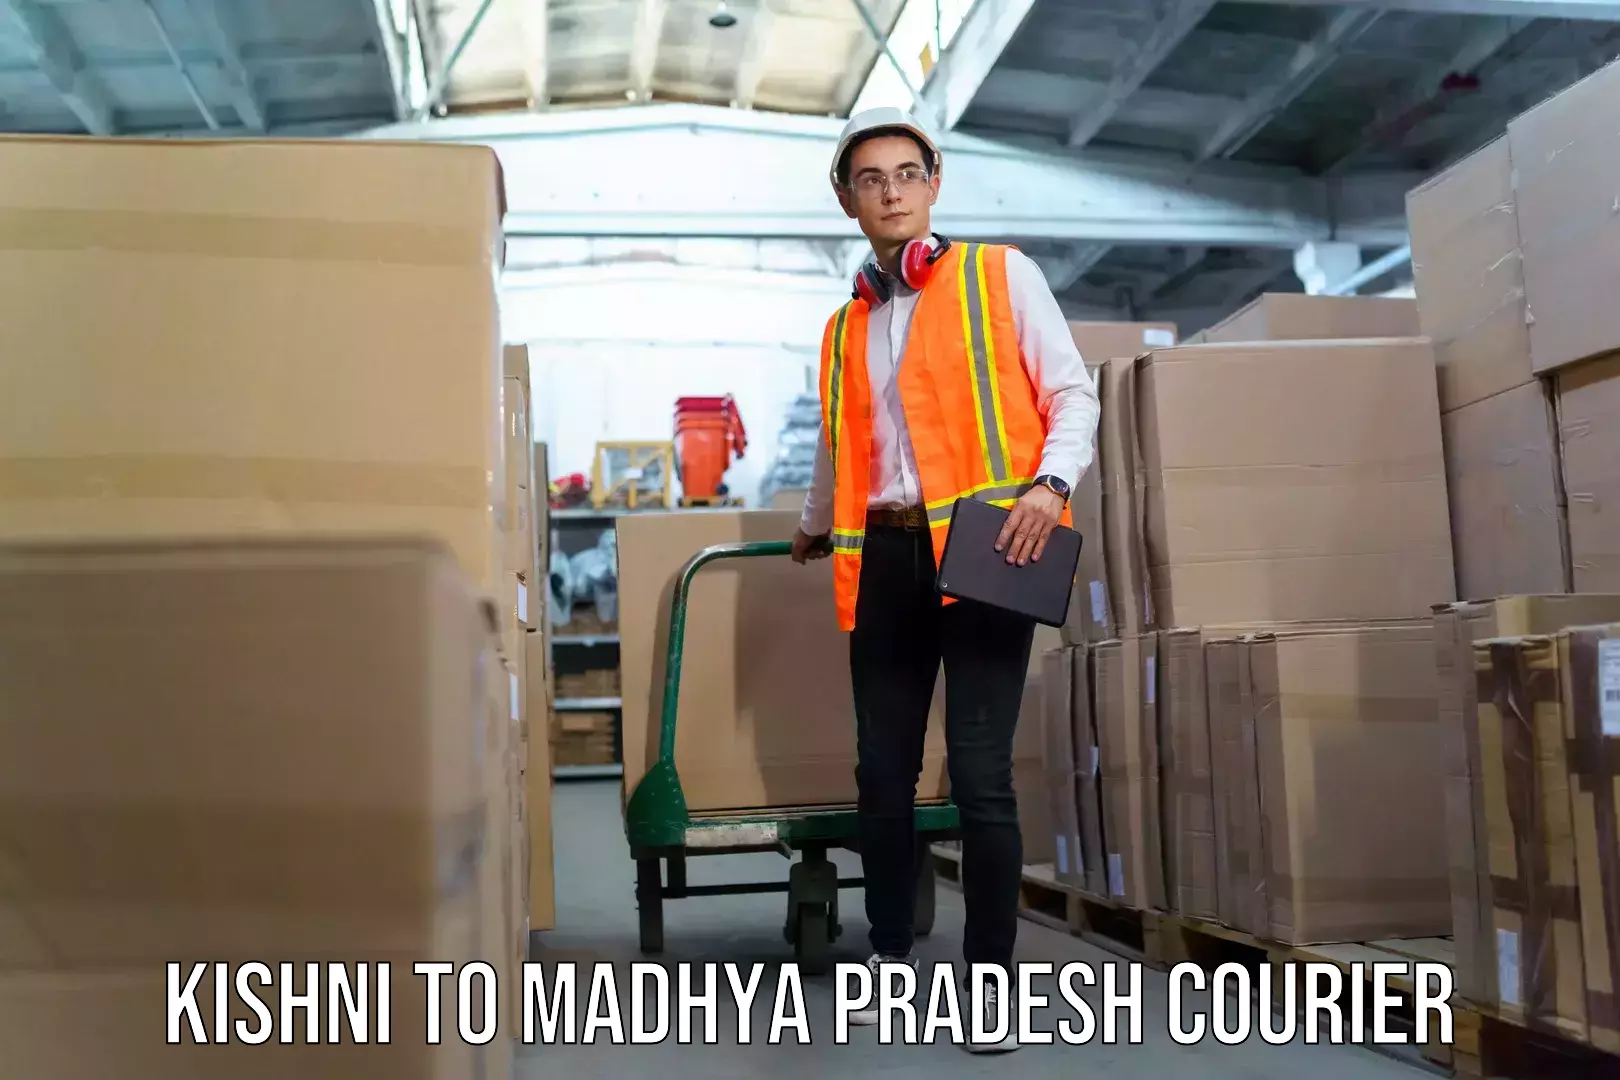 Baggage shipping service Kishni to Vidisha